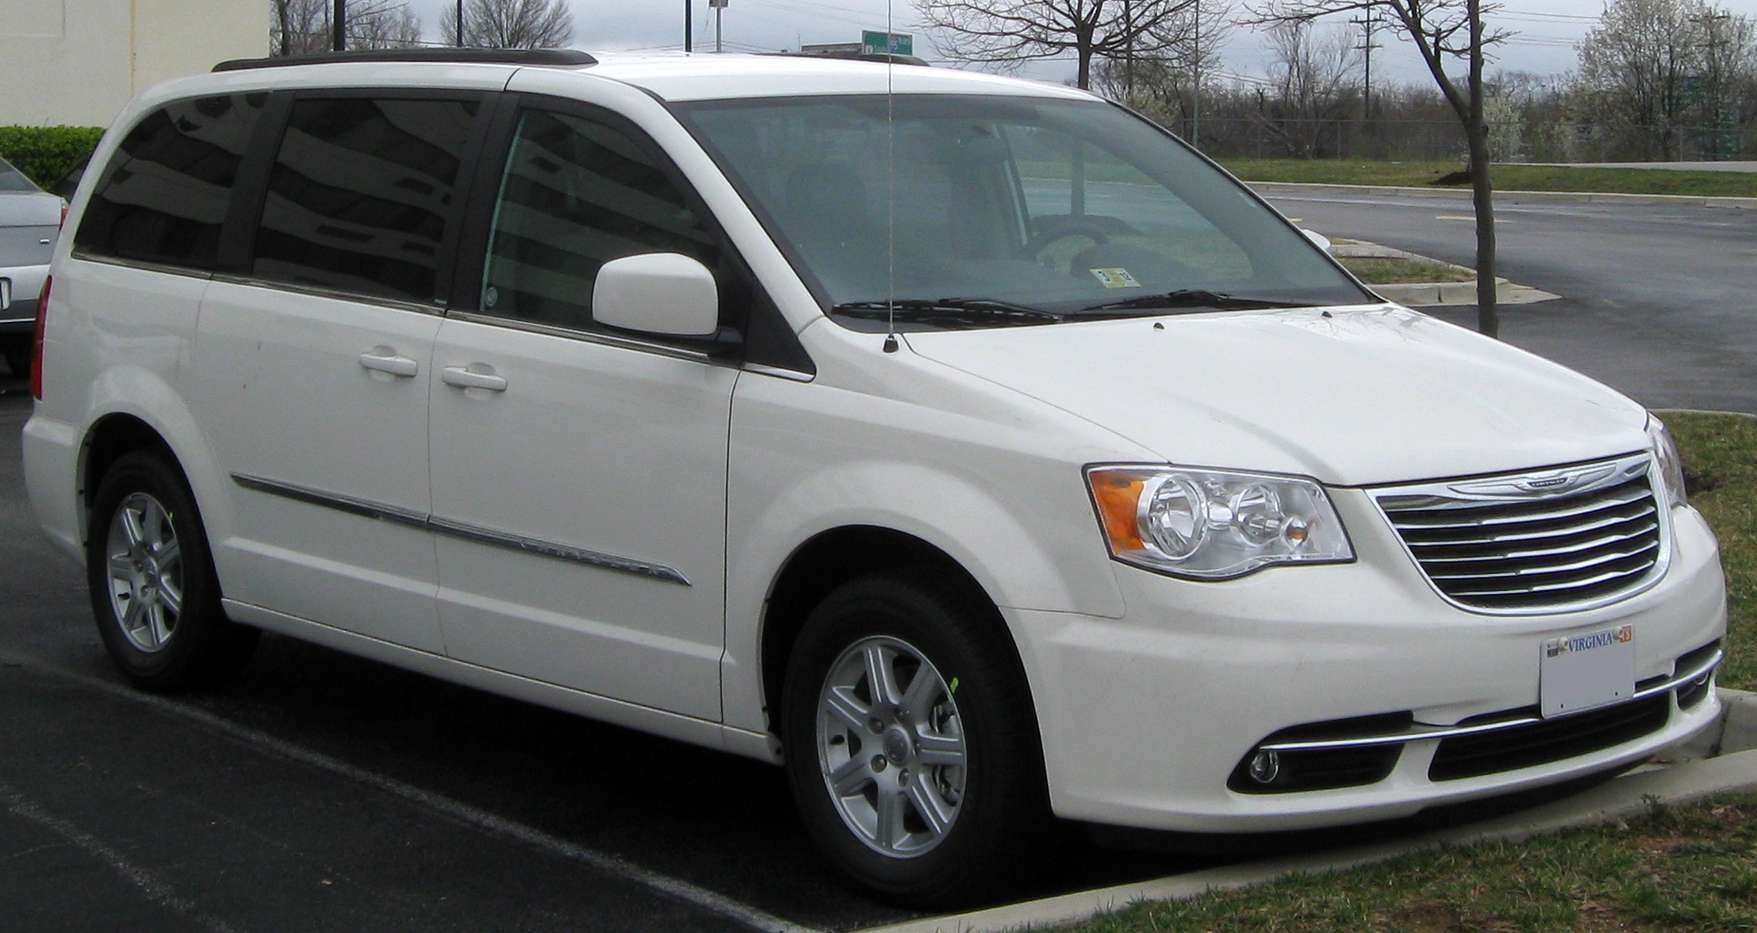 Chrysler Caravan #7336266